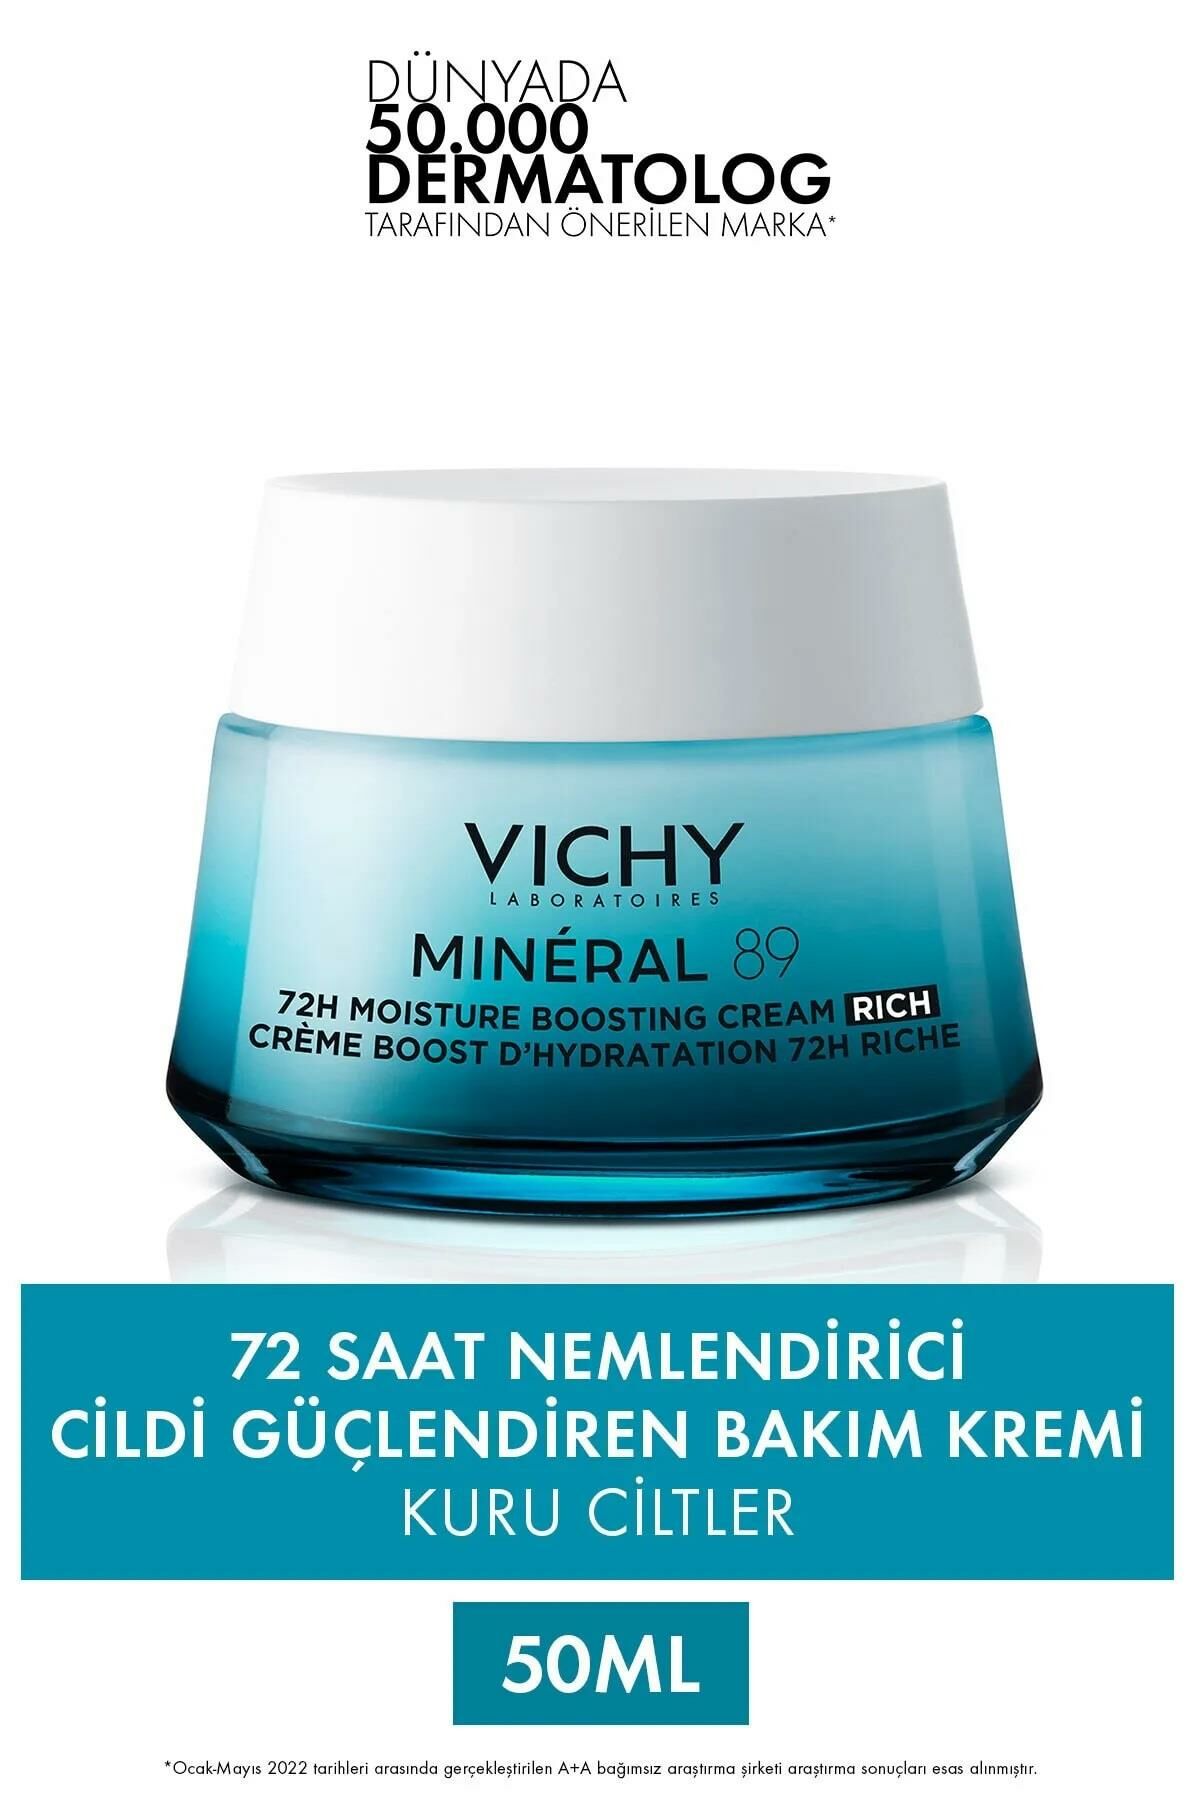 Vichy Mineral 89 Rich Cildi Güçlendiren 72 Saat Nemlendirici Bakım Kremi, Kuru Ciltler 50ml